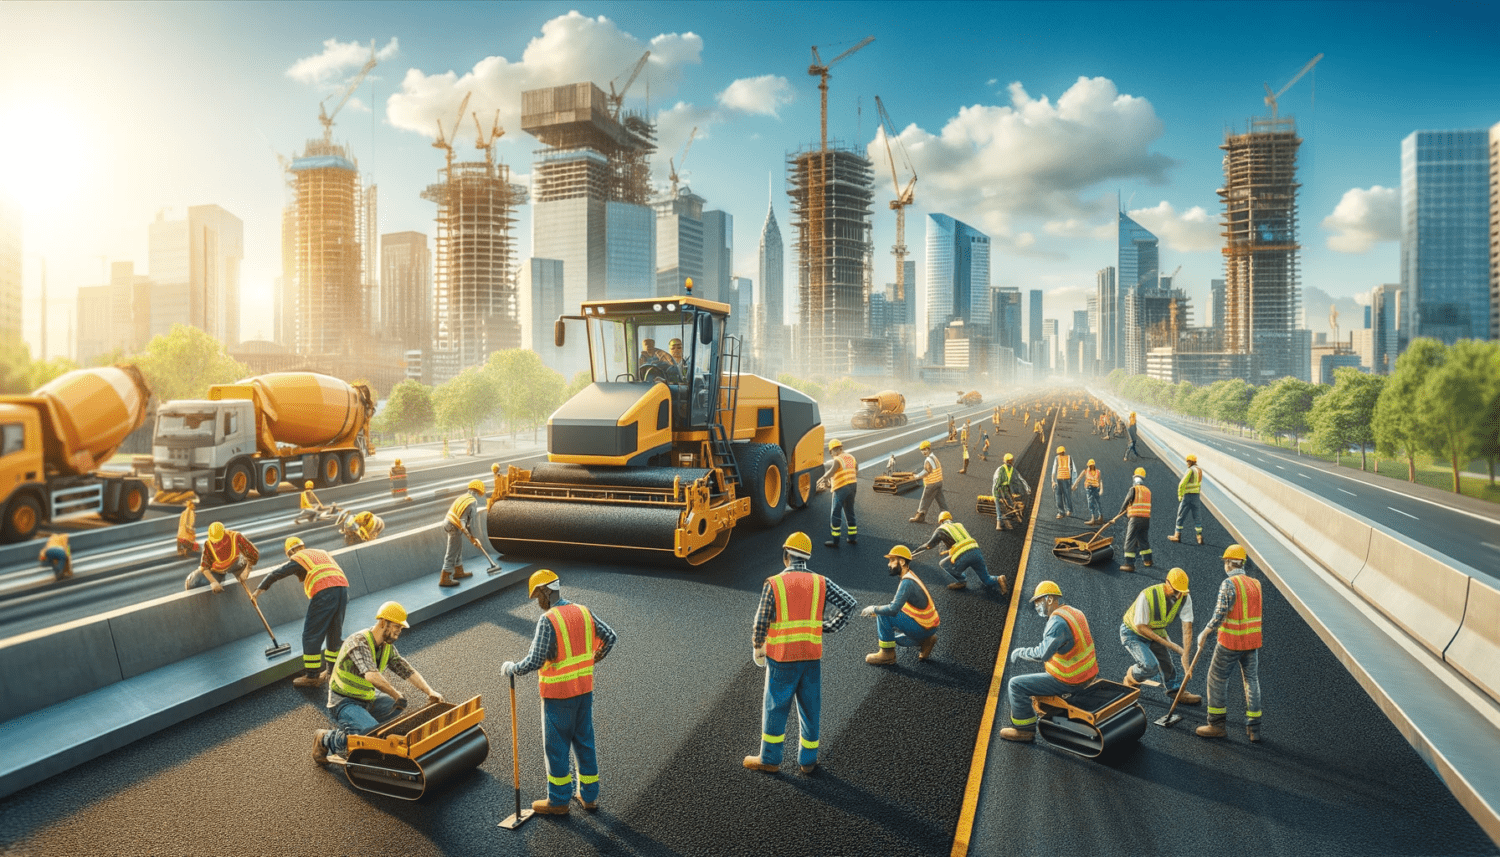 A kép egy aszfaltozás alatt álló útépítési munkaterületről készült, ahol munkások biztonsági felszerelésben dolgoznak az új úton. A képen láthatóak nehézgépek, mint aszfaltozó gép és hengerek, valamint a háttérben egy élénk városkép.